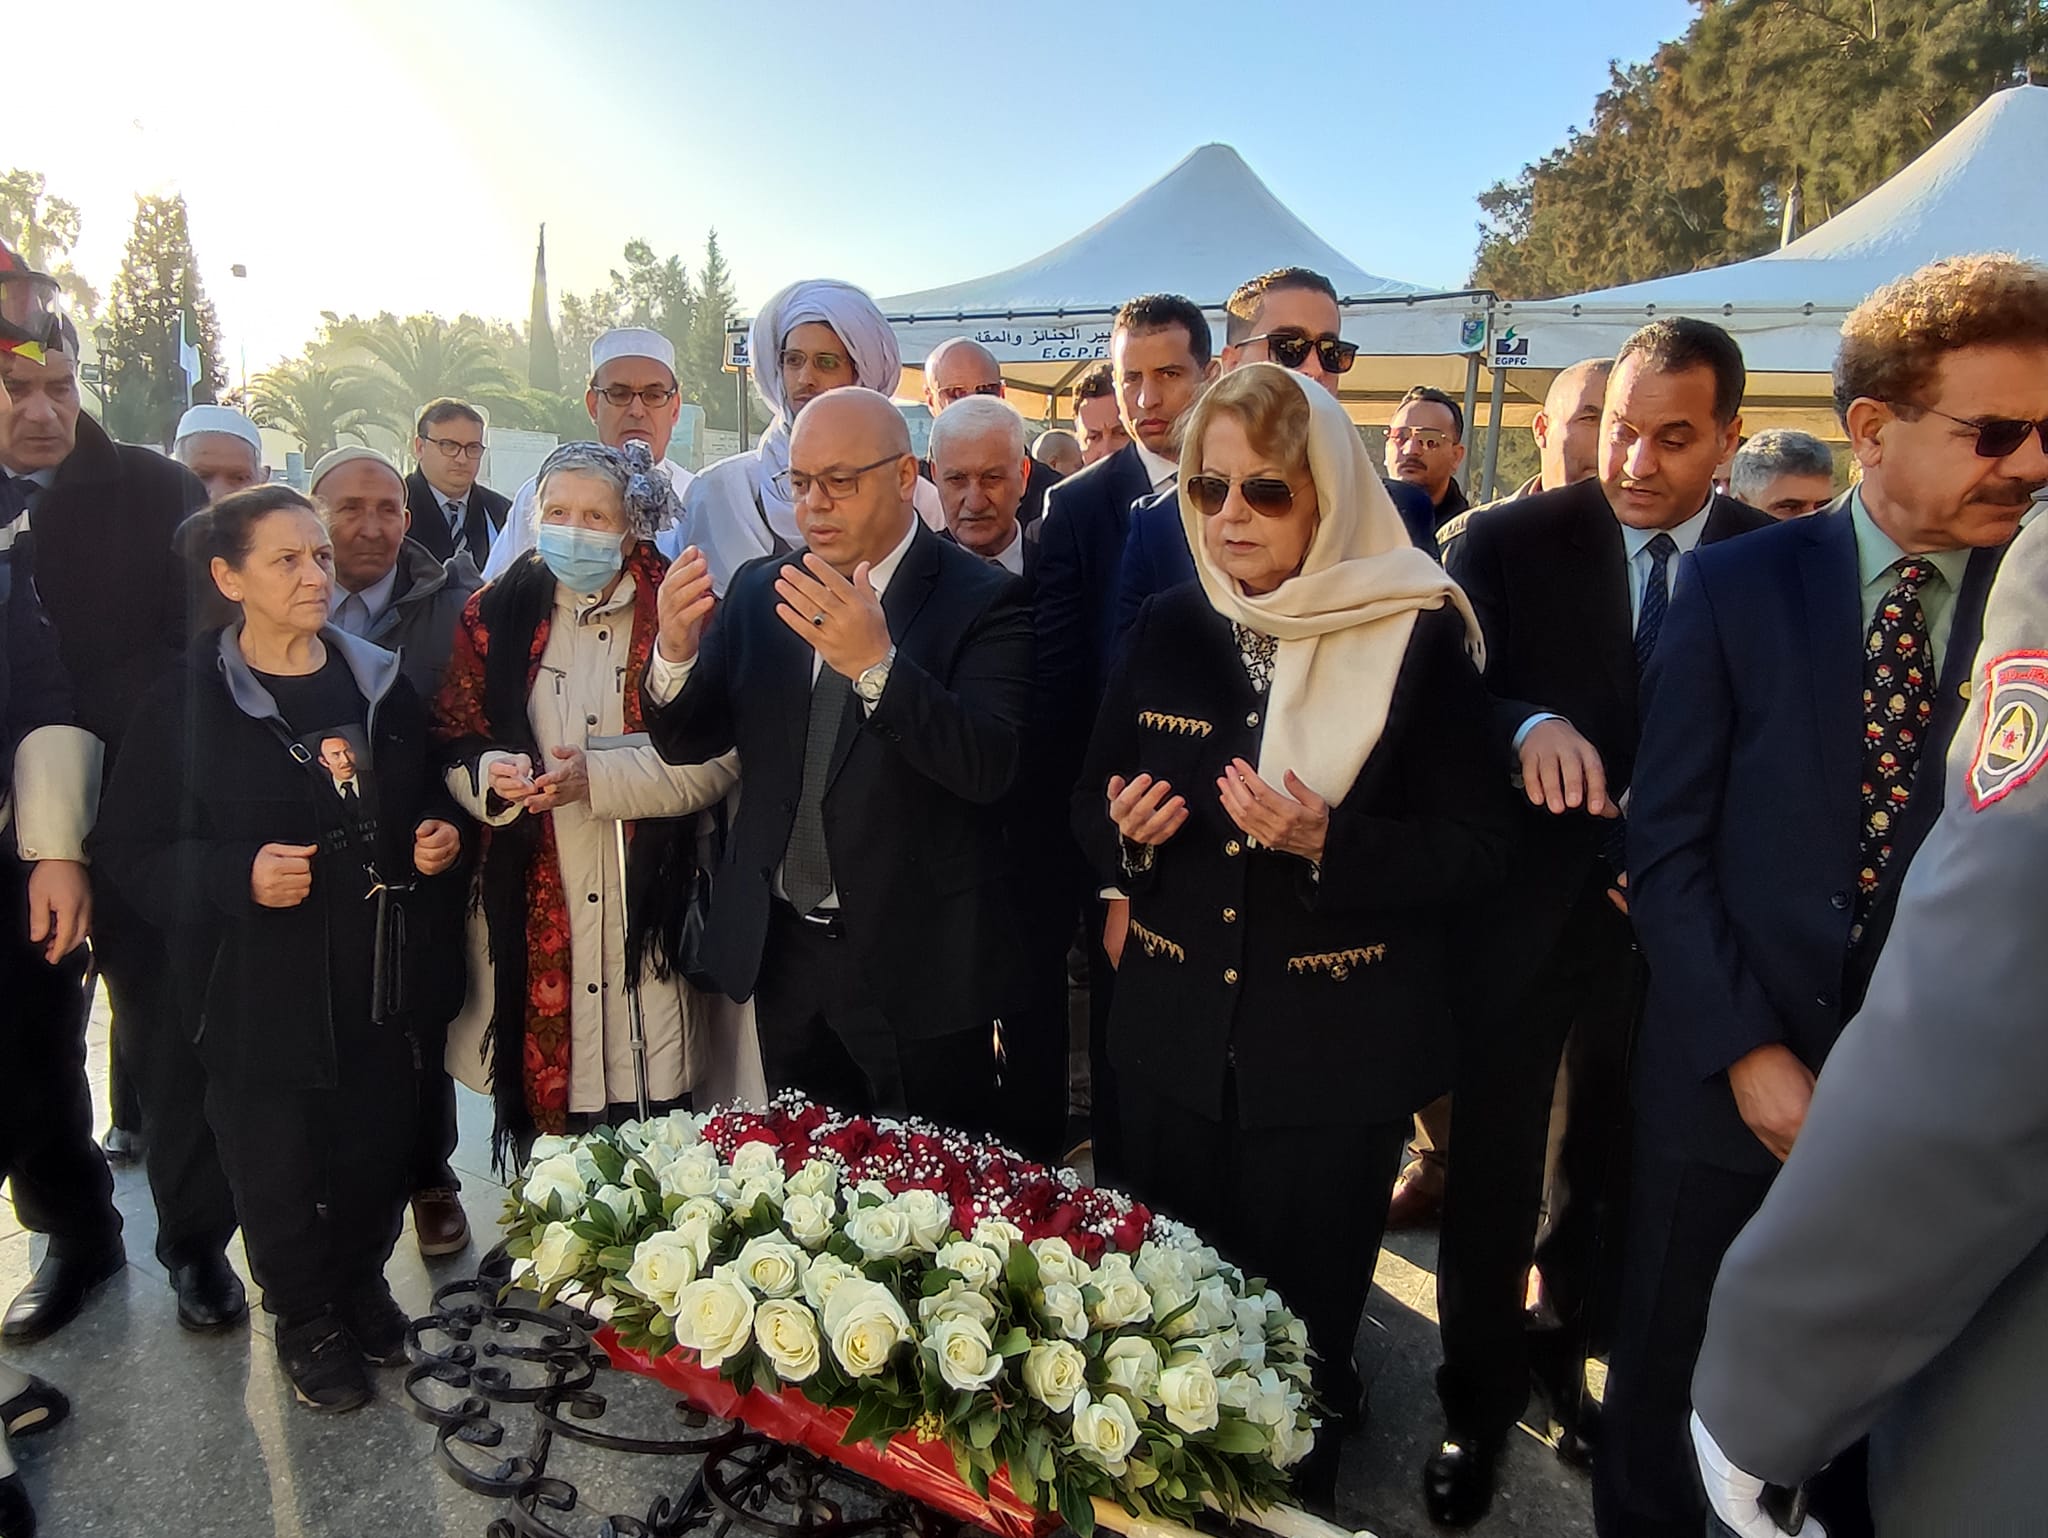 Cérémonie de recueillement au cimetière d'El-Alia à la mémoire du défunt président Houari Boumediene